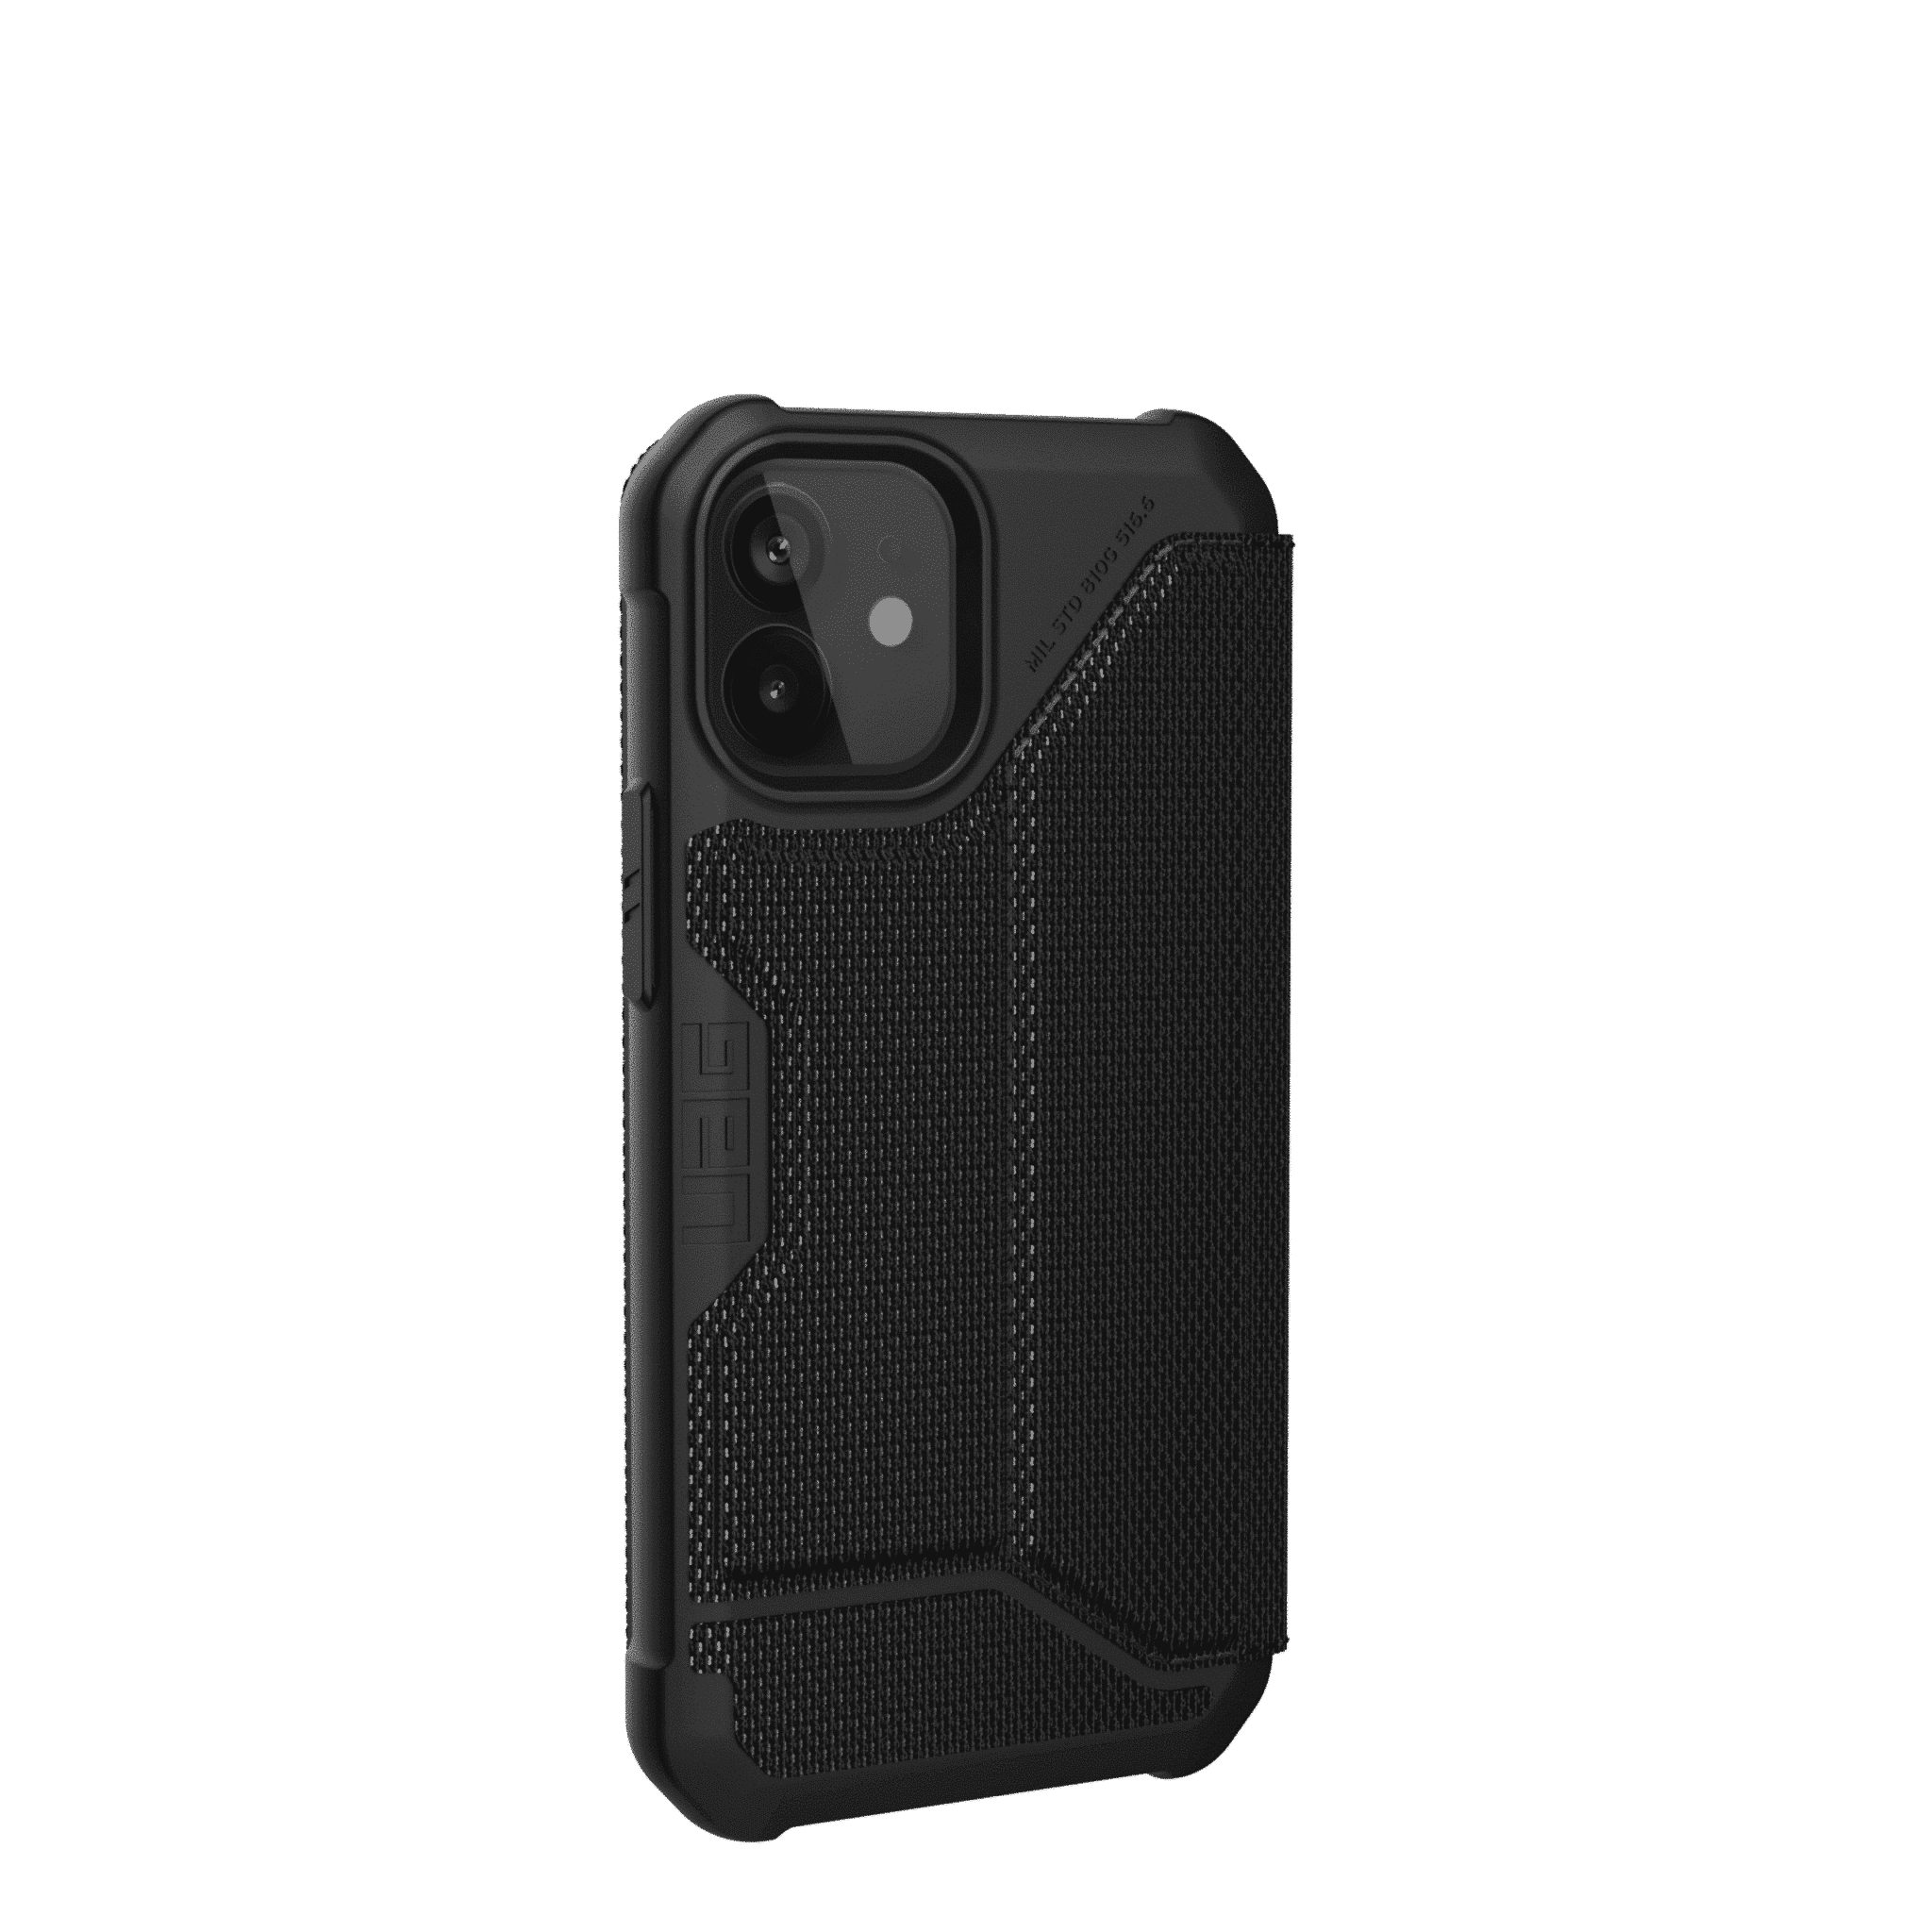 เคส UAG รุ่น Metropolis - iPhone 12 Mini - ผ้าสีดำ